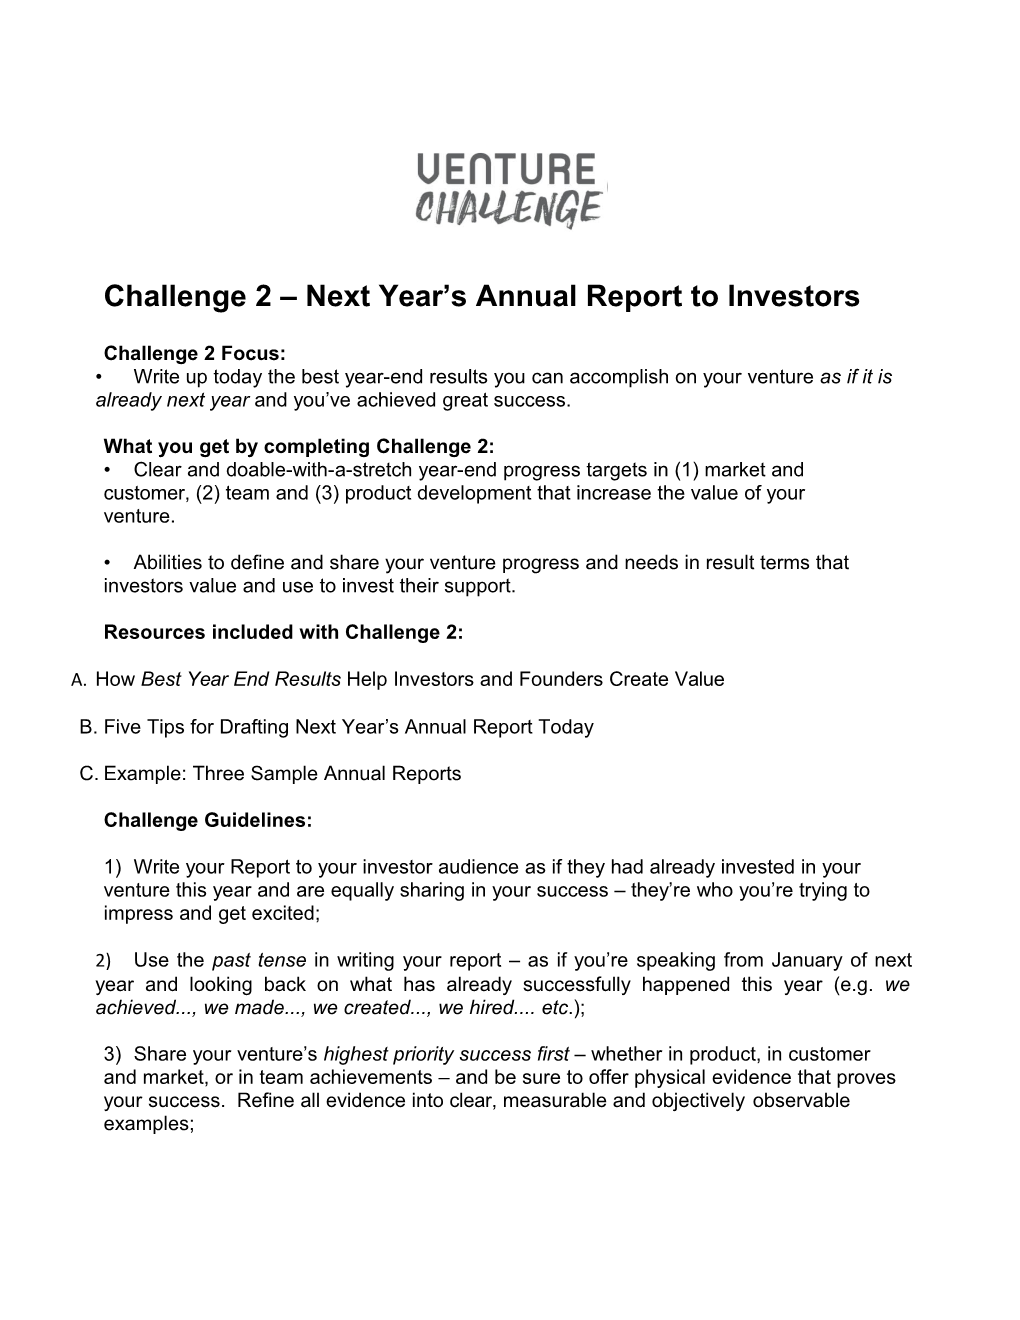 Challenge2 Nextyear Sannualreporttoinvestors